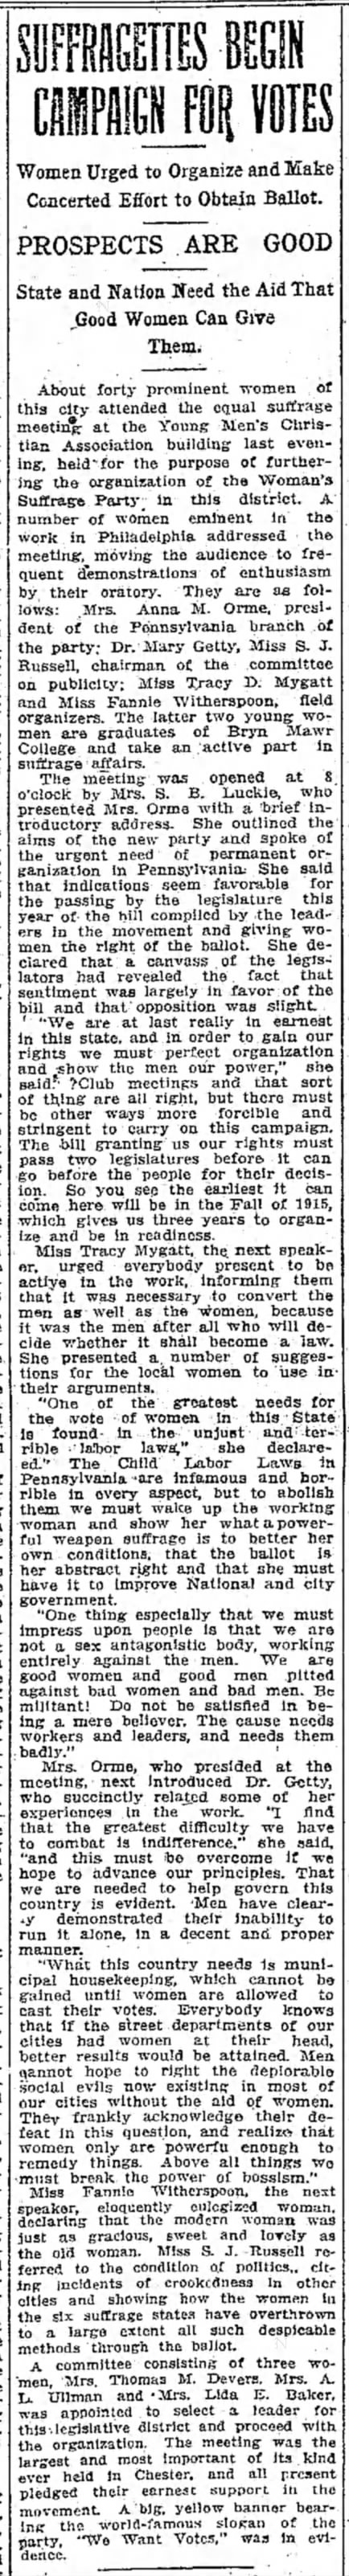 Suffrage campaign in Pennsylvania, 1912.